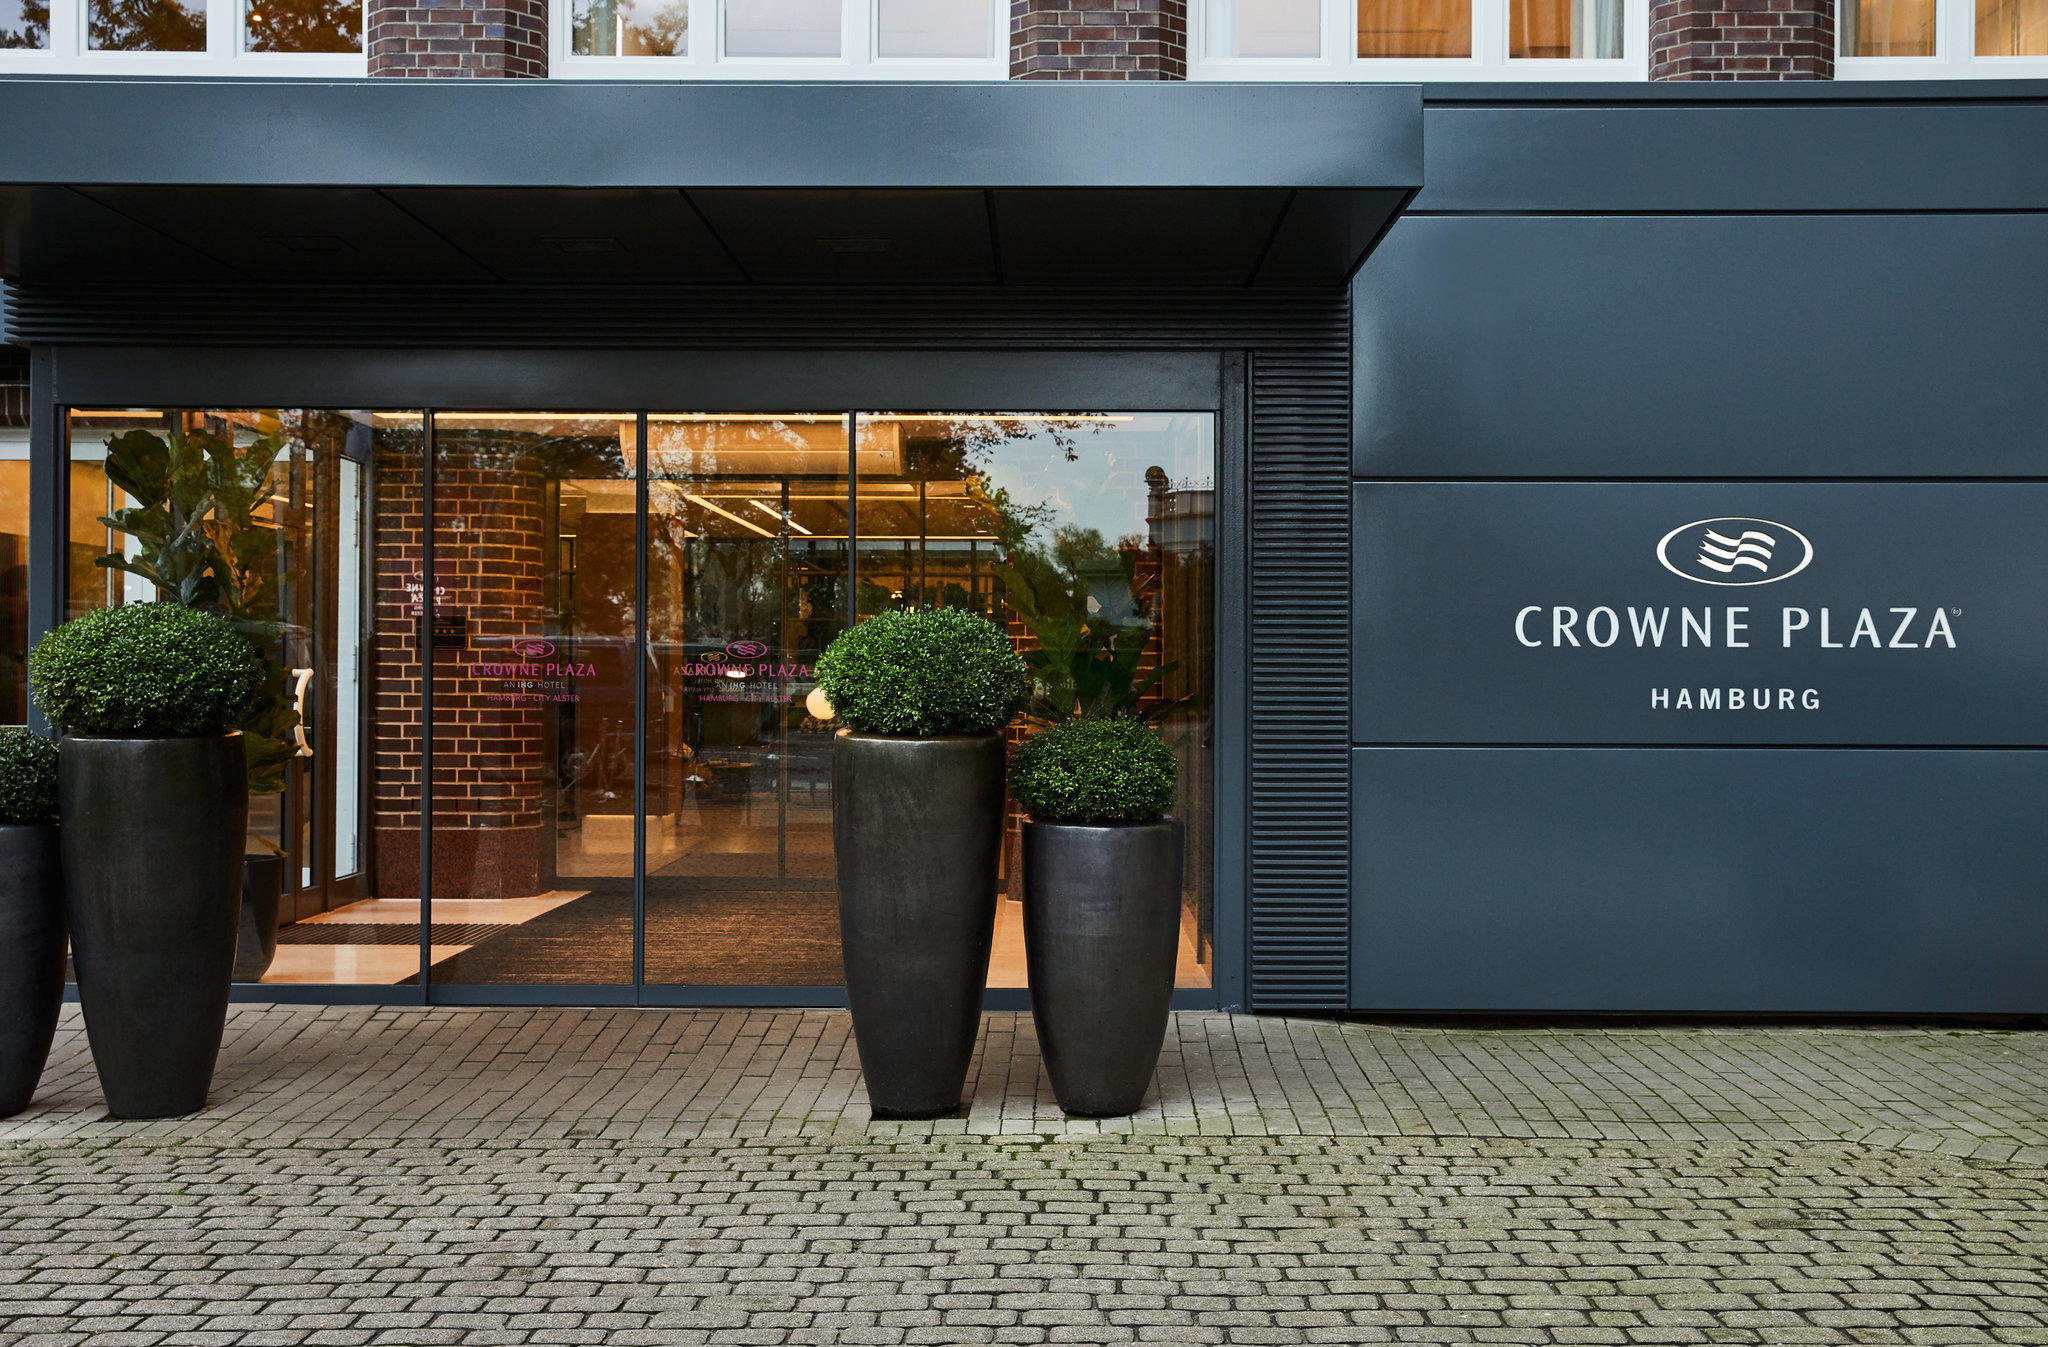 Crowne Plaza Hamburg - City Alster, an IHG Hotel, Graumannsweg 10 in Hamburg